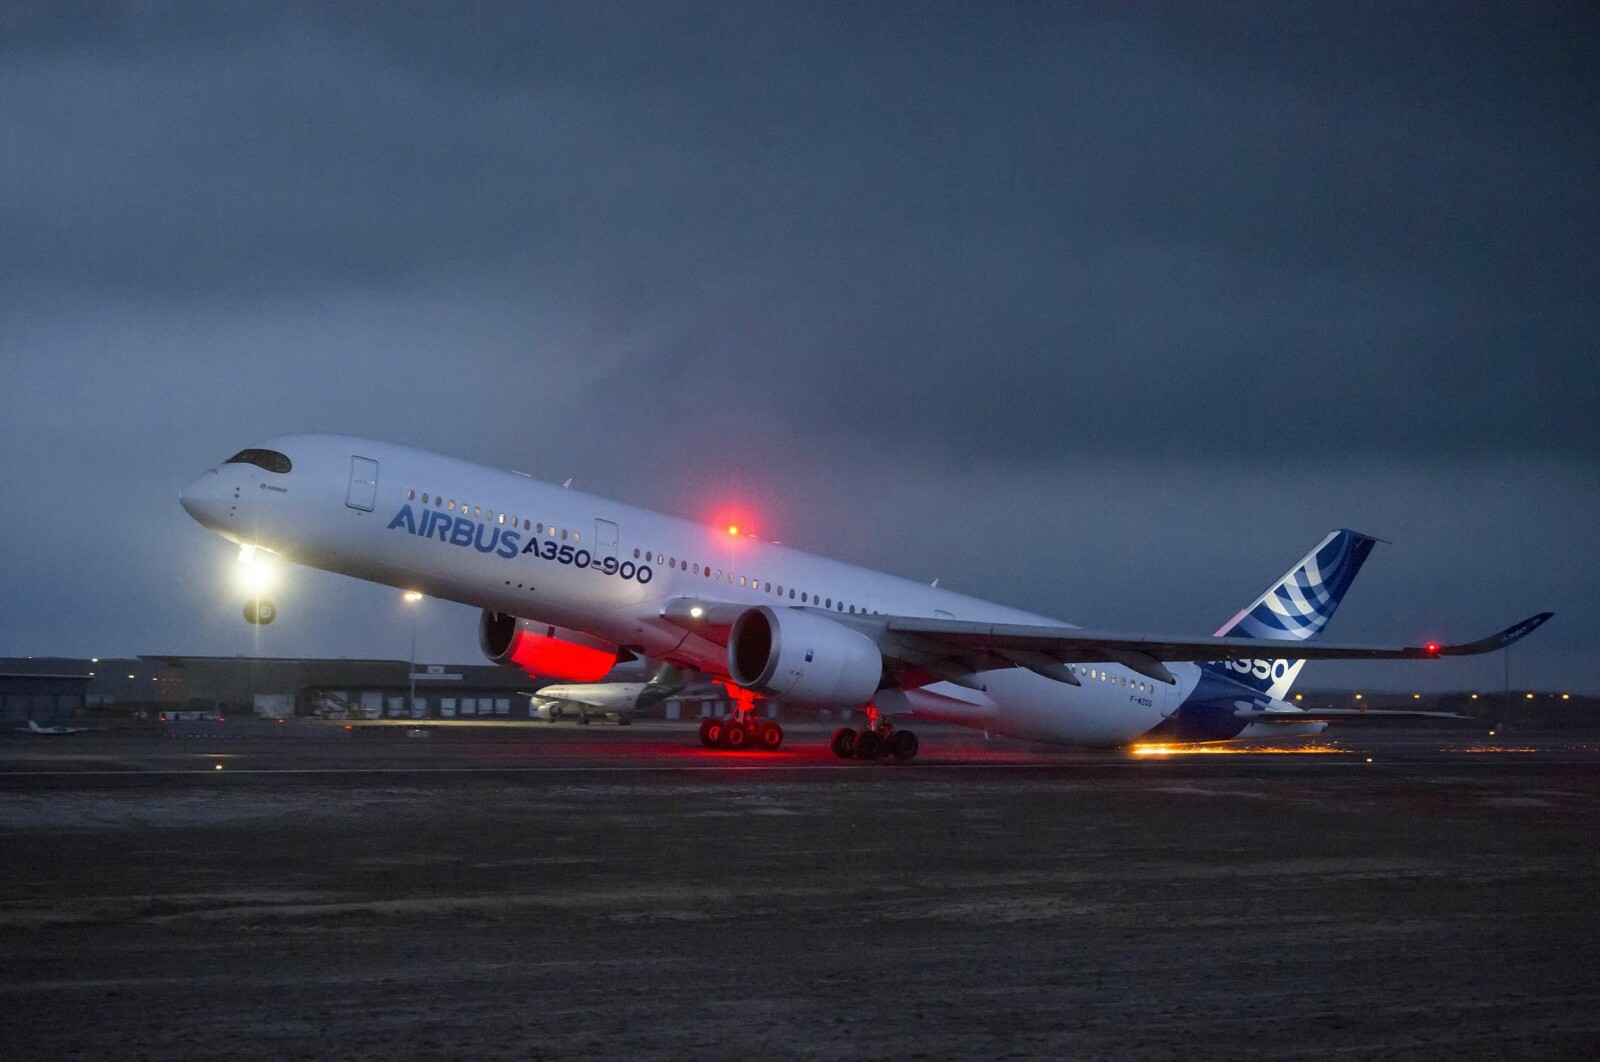 <b>GNISTREGN:</b> Når halen skraper langs asfalten i 250 km/t kan gnistregnet bli spektakulært. Bildet er tatt under en kontrollert tailstrike-test med prototypen til Airbus A350.